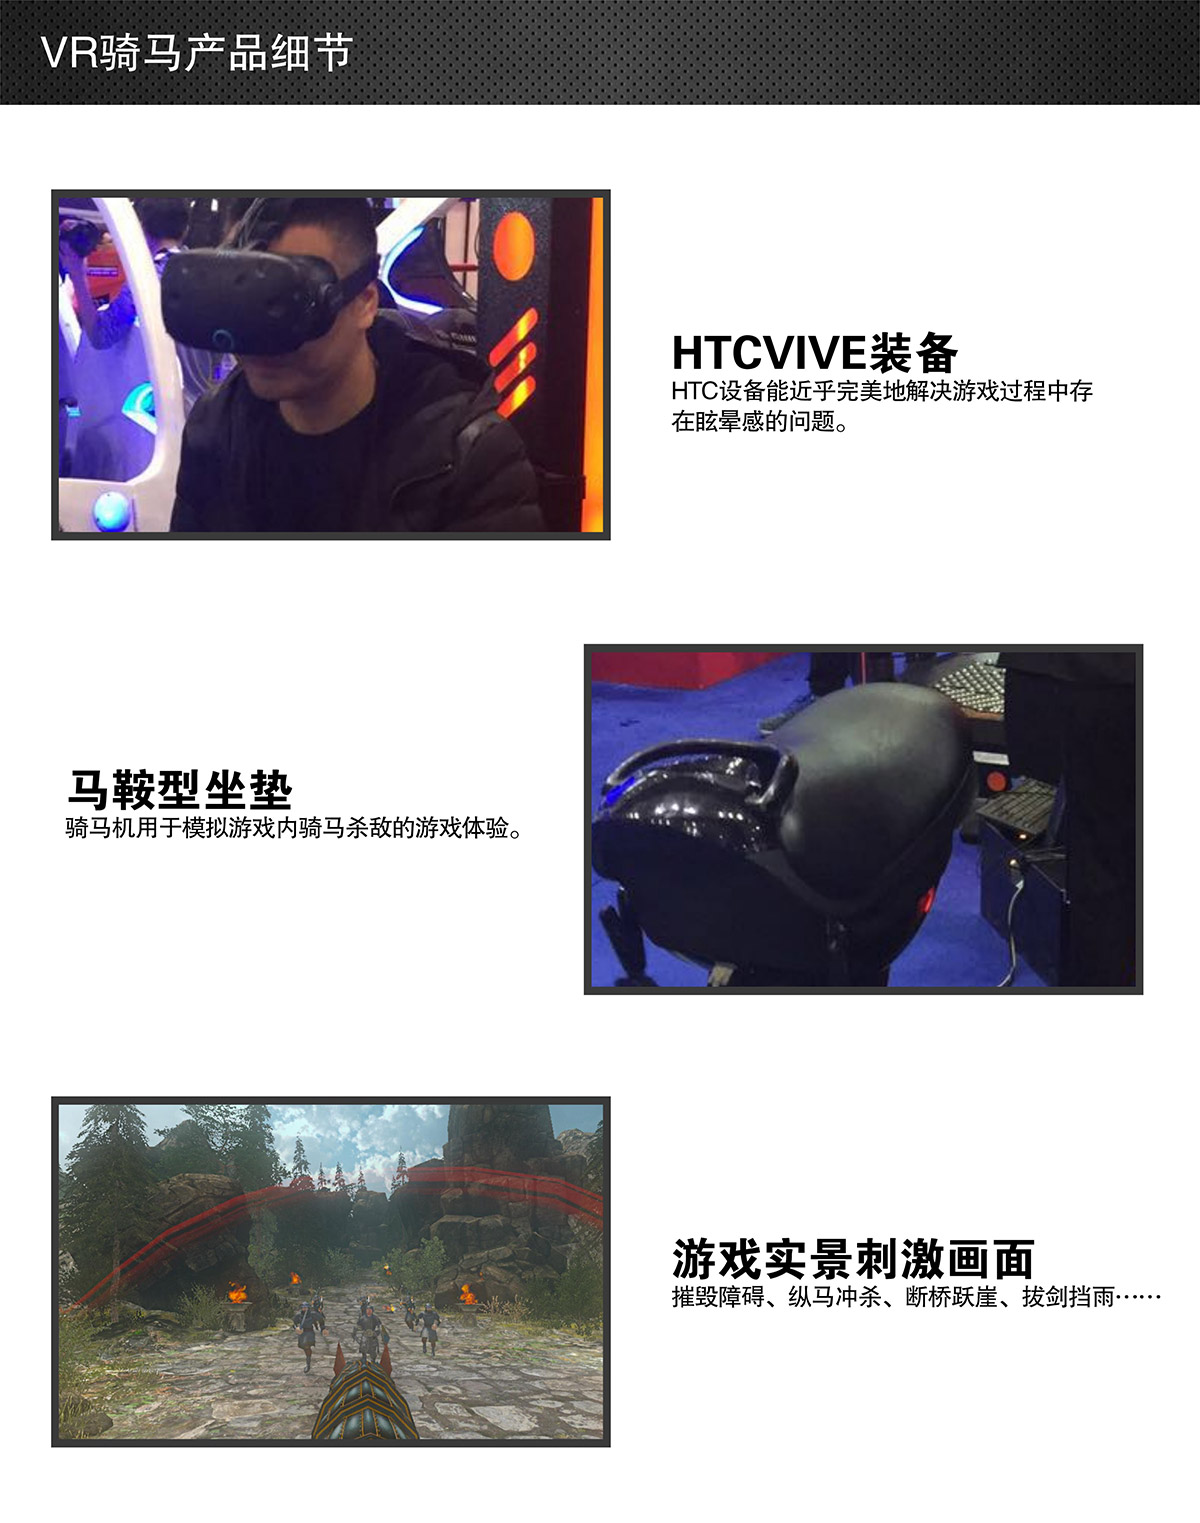 安全体验VR骑马细节展示.jpg